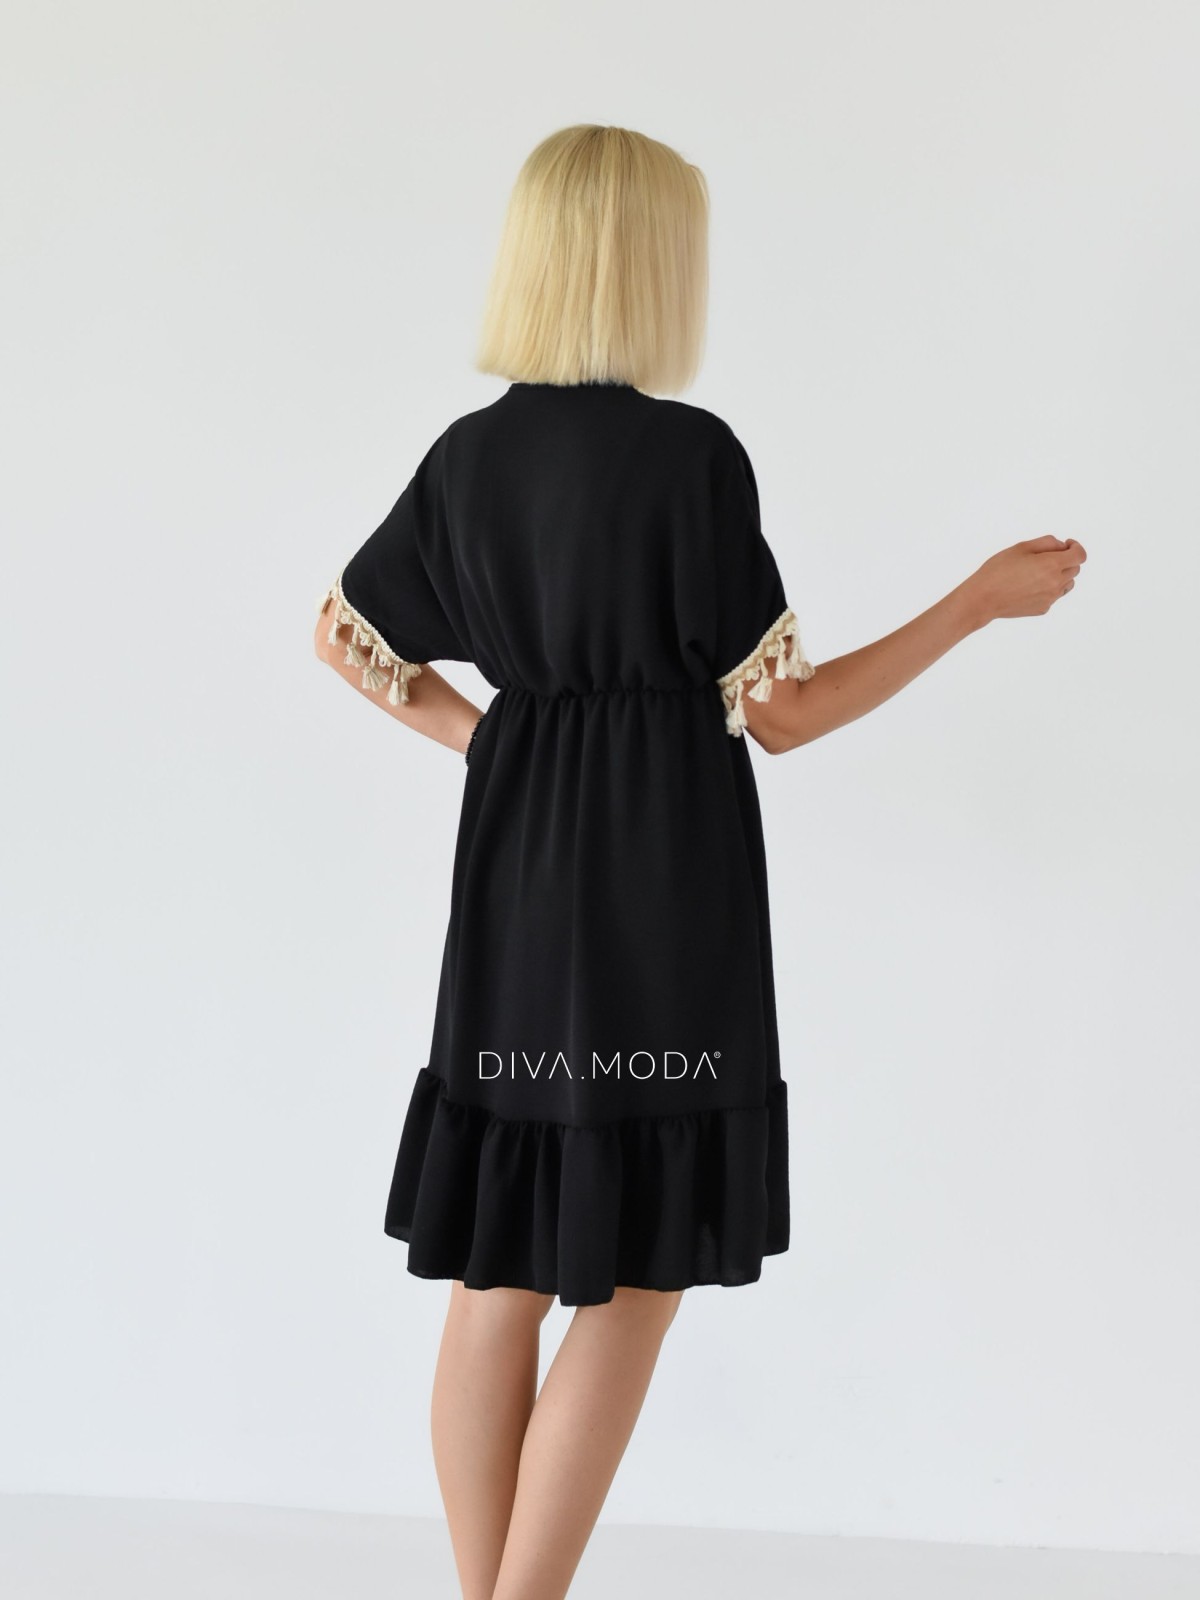 Letní šaty s třásní Allie černé A 250